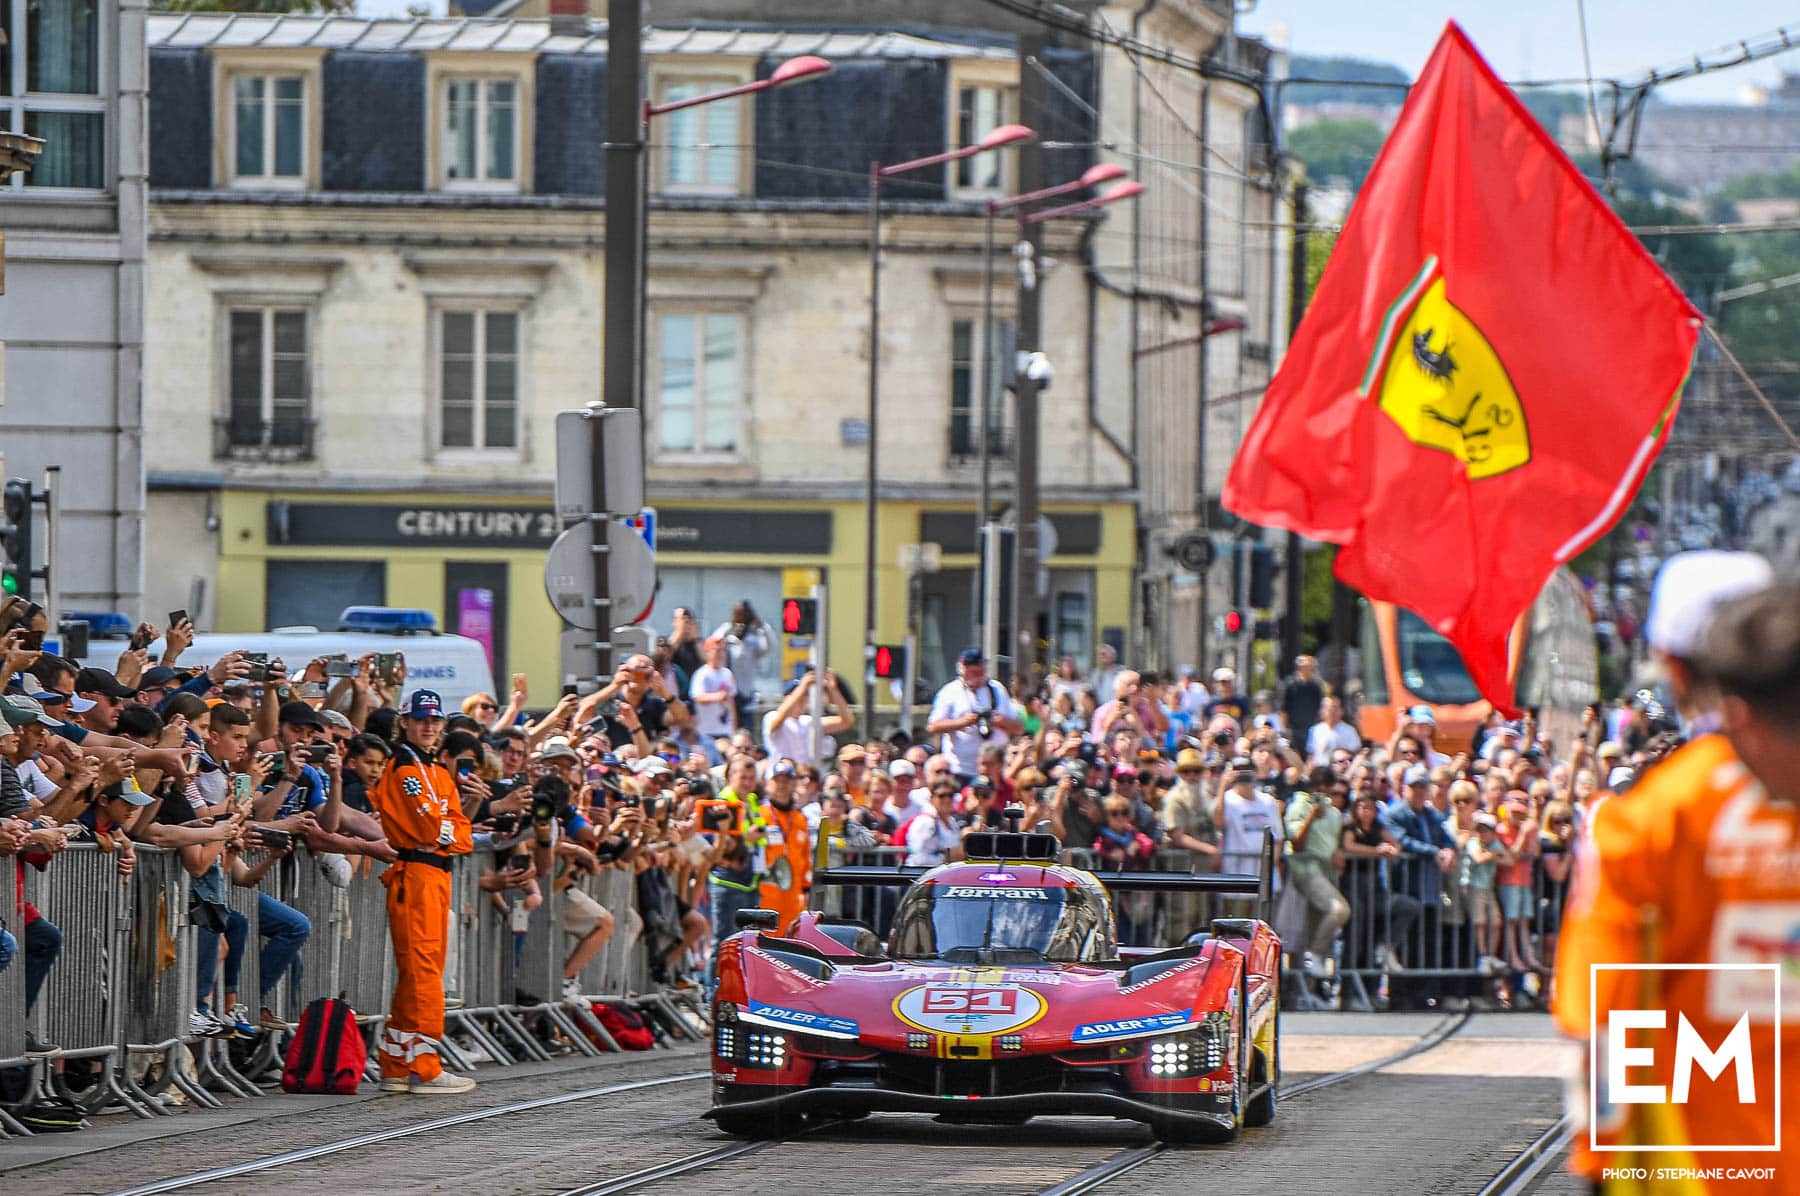 Le roulage en ville des 24 Heures du Mans, nouveau temps fort de l'événement